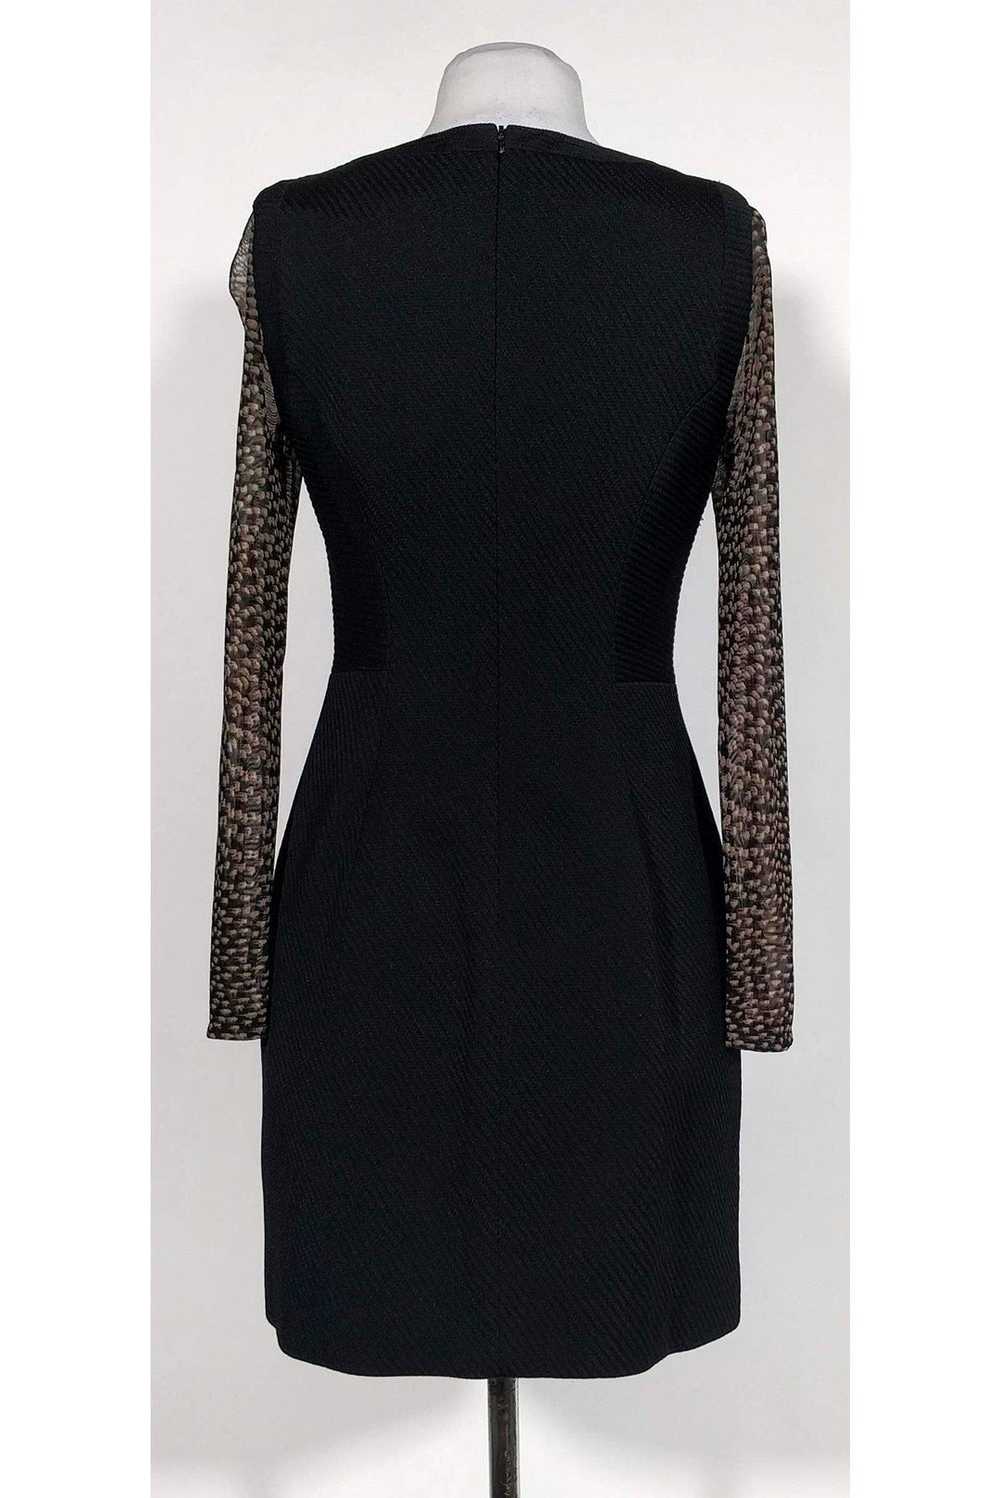 Karen Millen - Black Textured Pattern Sleeve Dres… - image 3